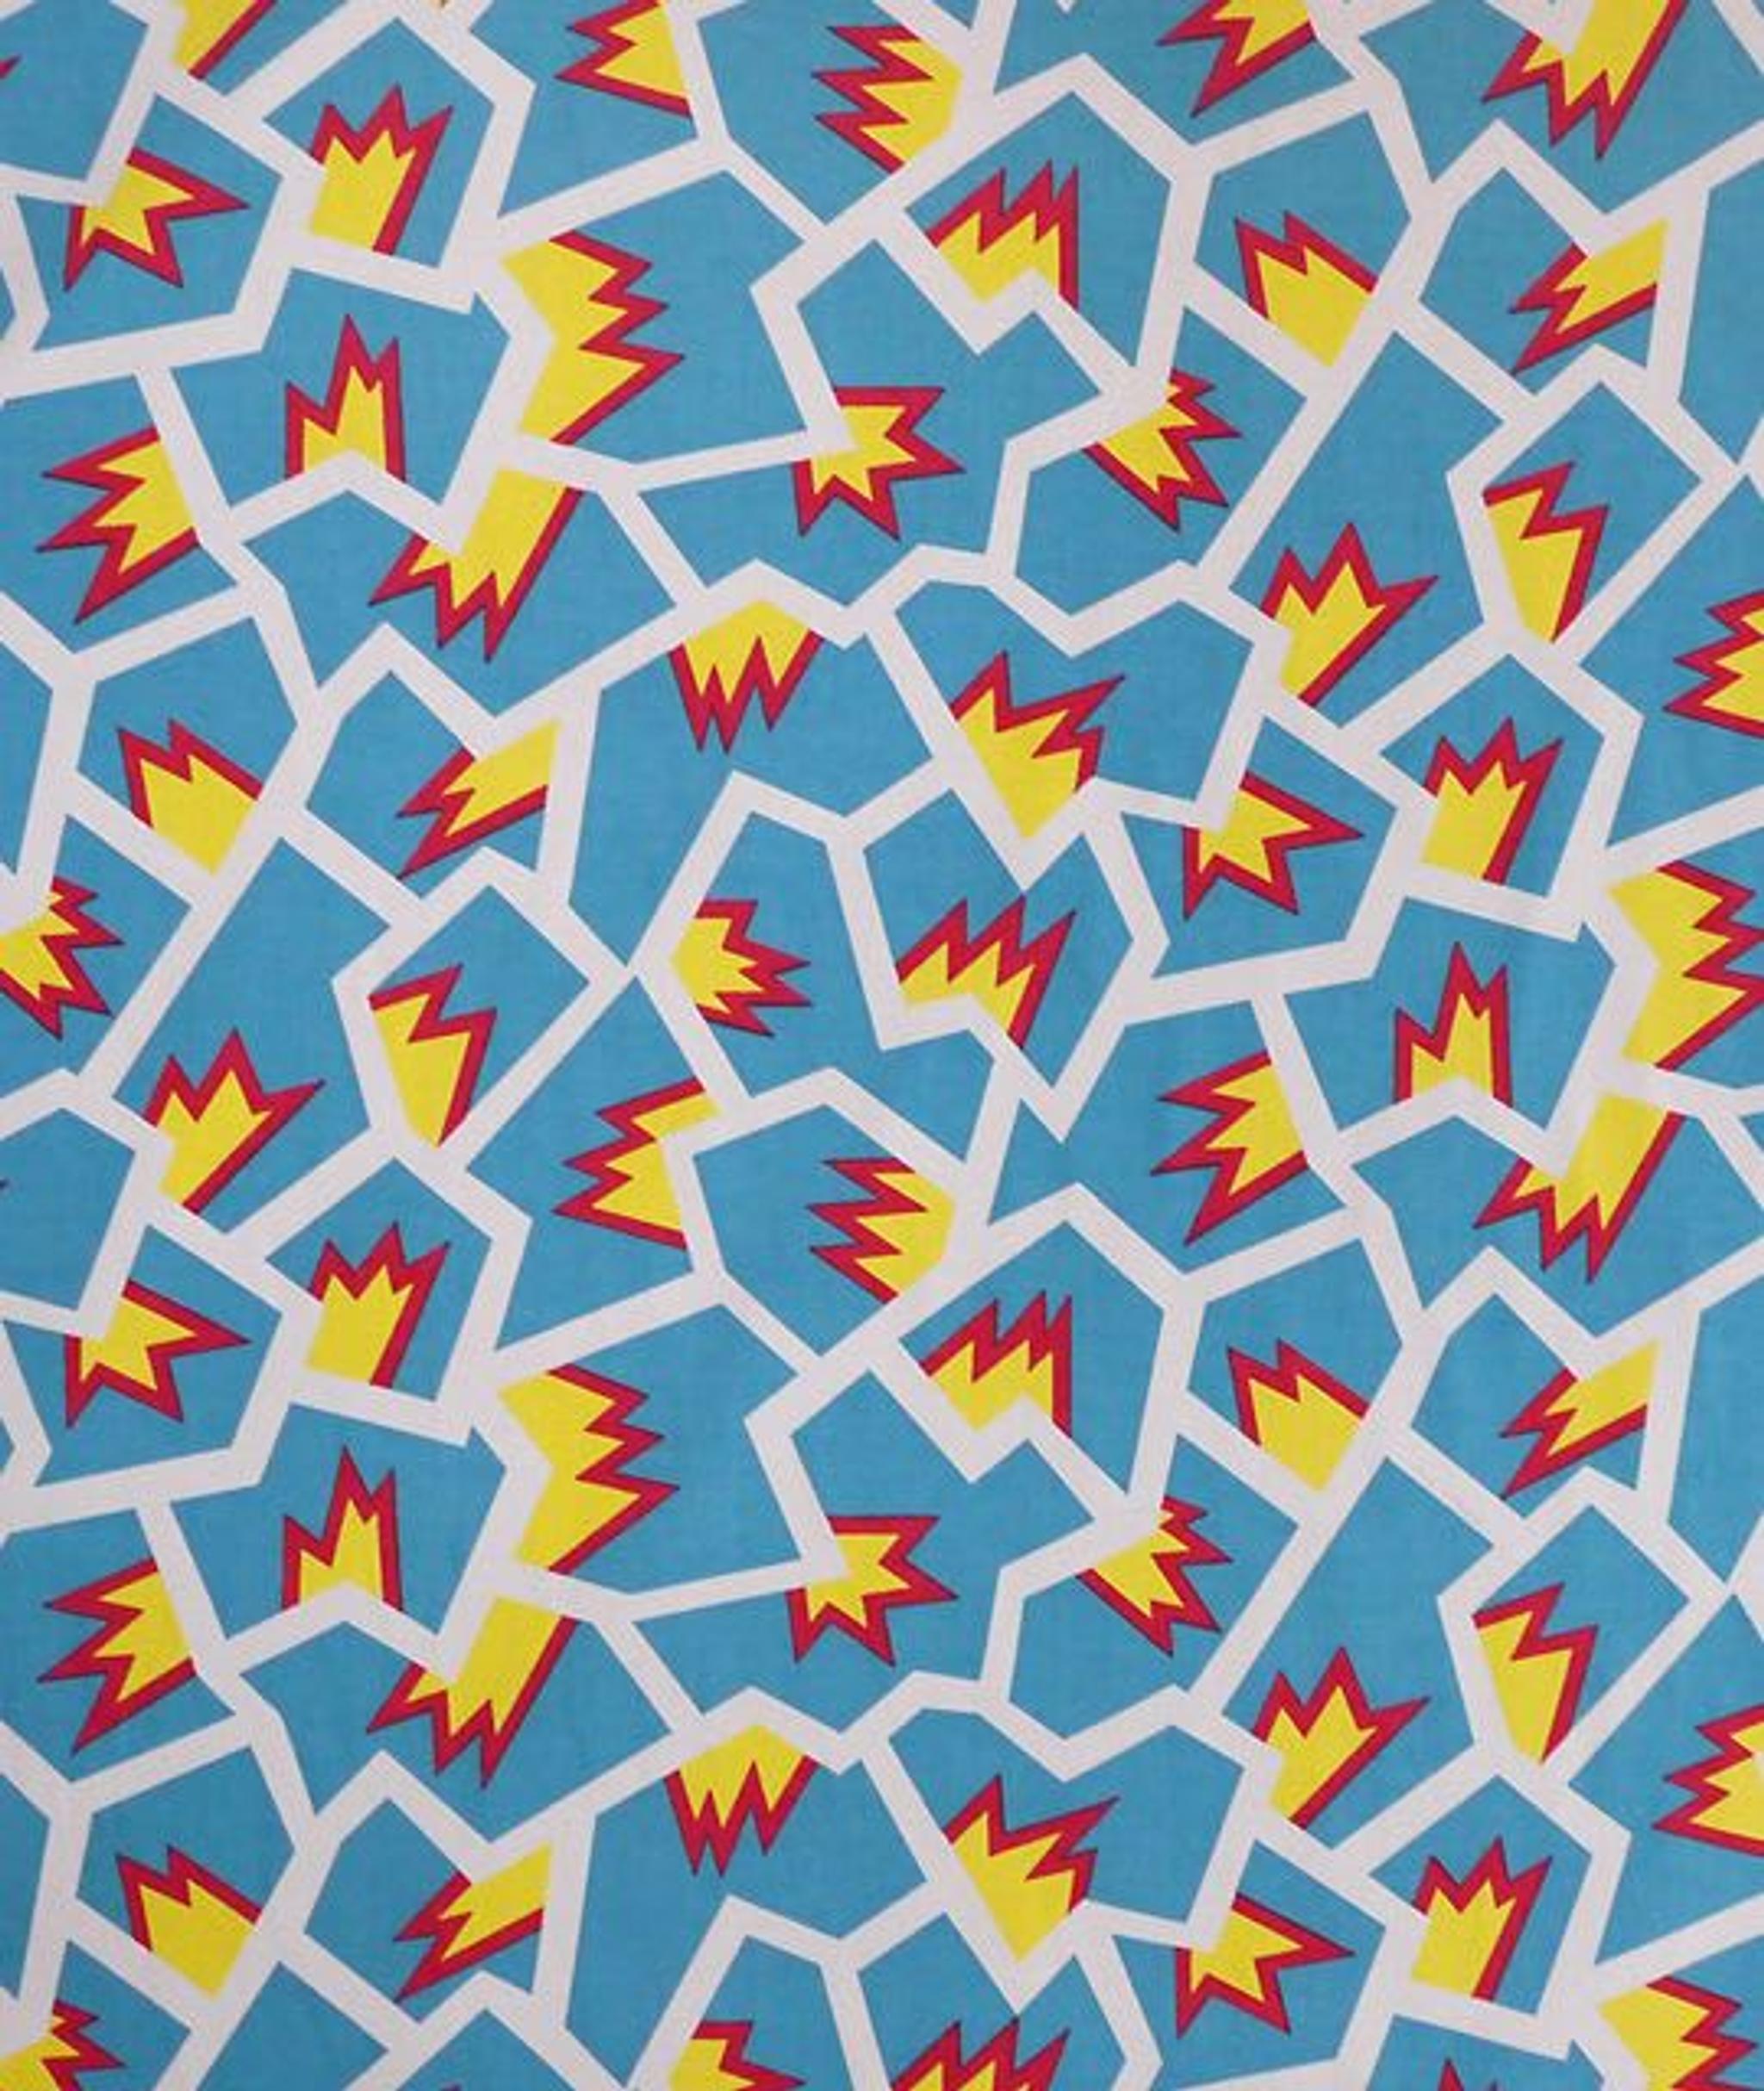 Nathalie Du Pasquier original pattern of the Burundi textile designed for Memphis in 1981